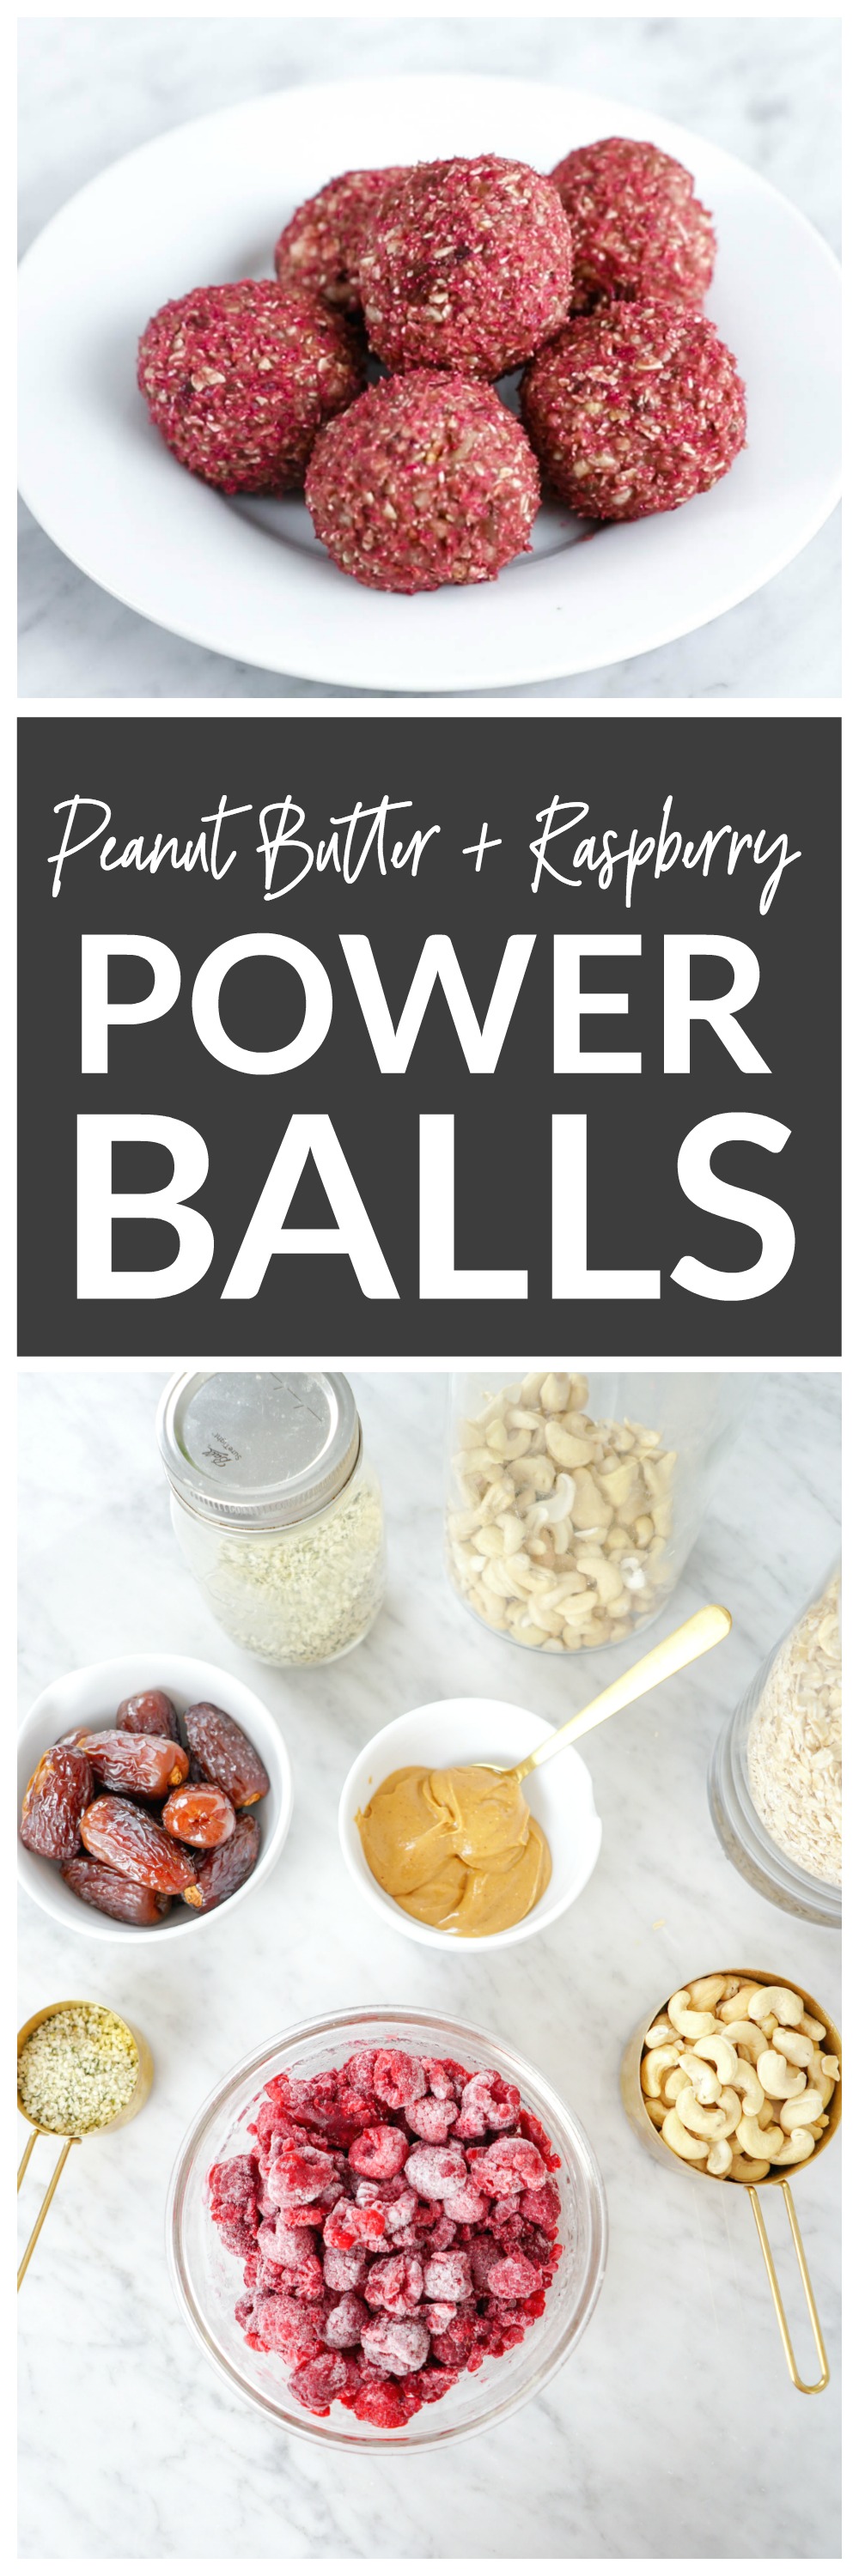 Peanut Butter Raspberry Power Balls - vegan, gluten-free